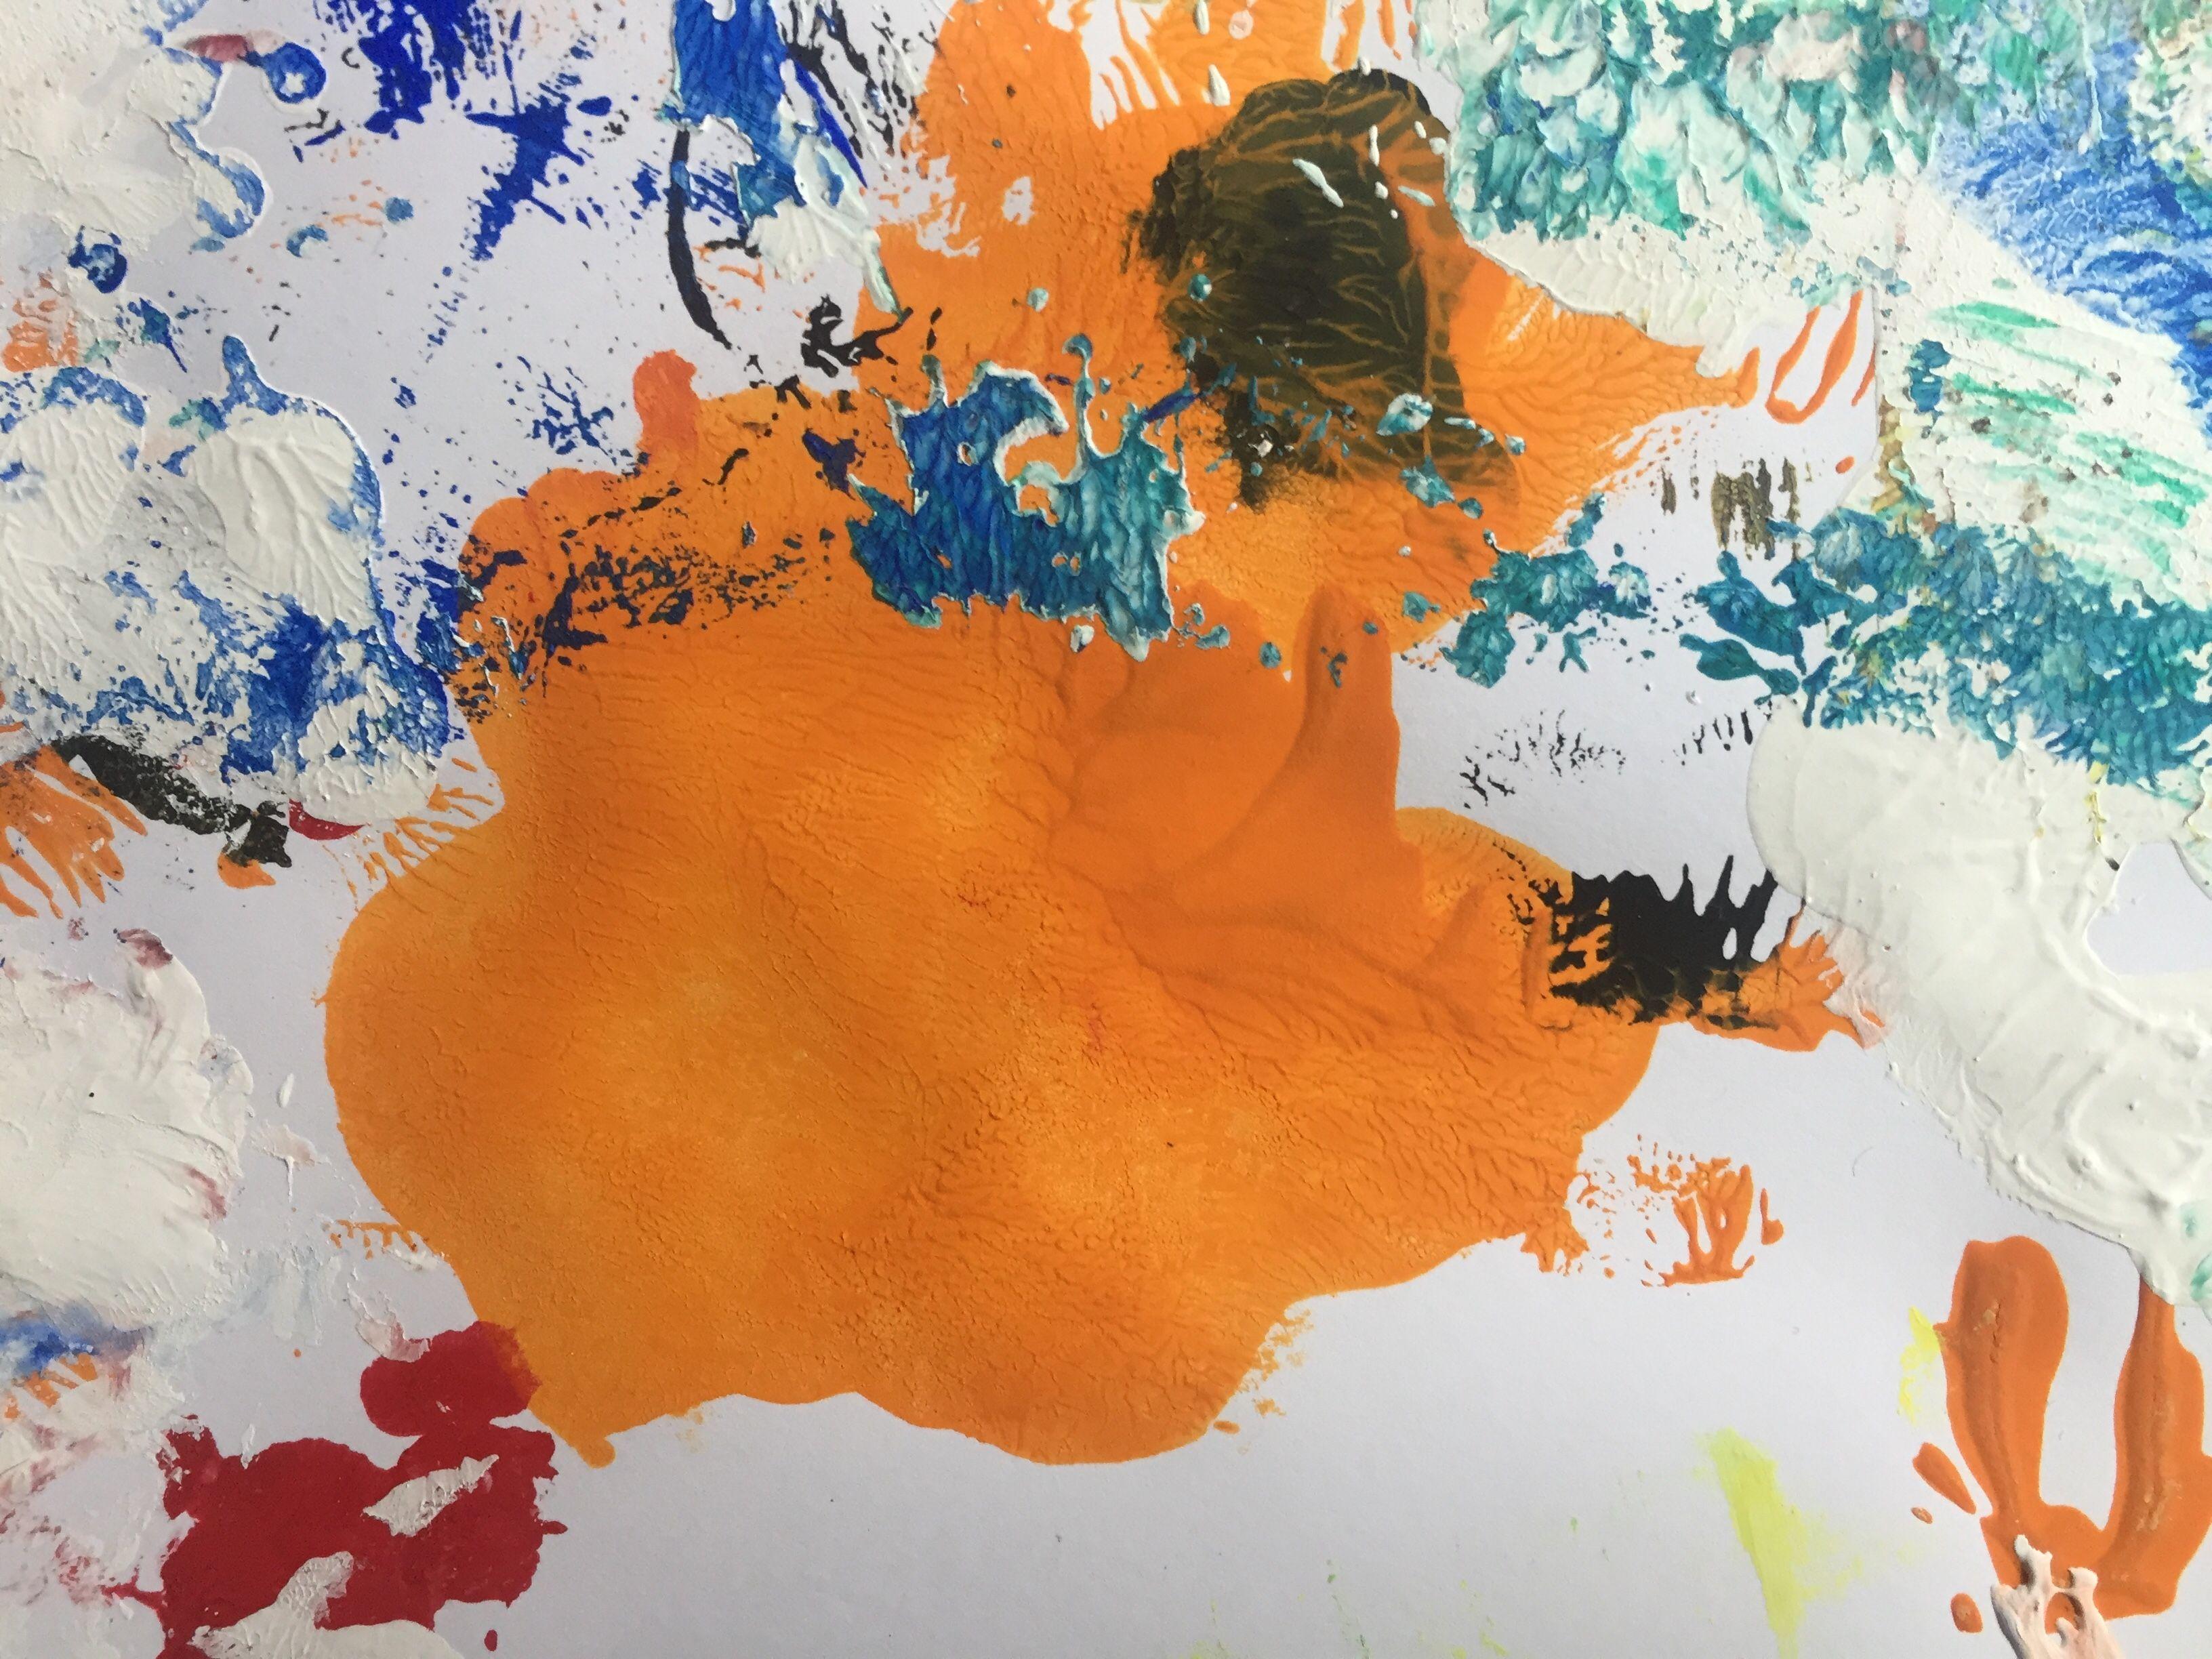 La souris orange, peinture, acrylique sur papier - Painting de Christel Haag